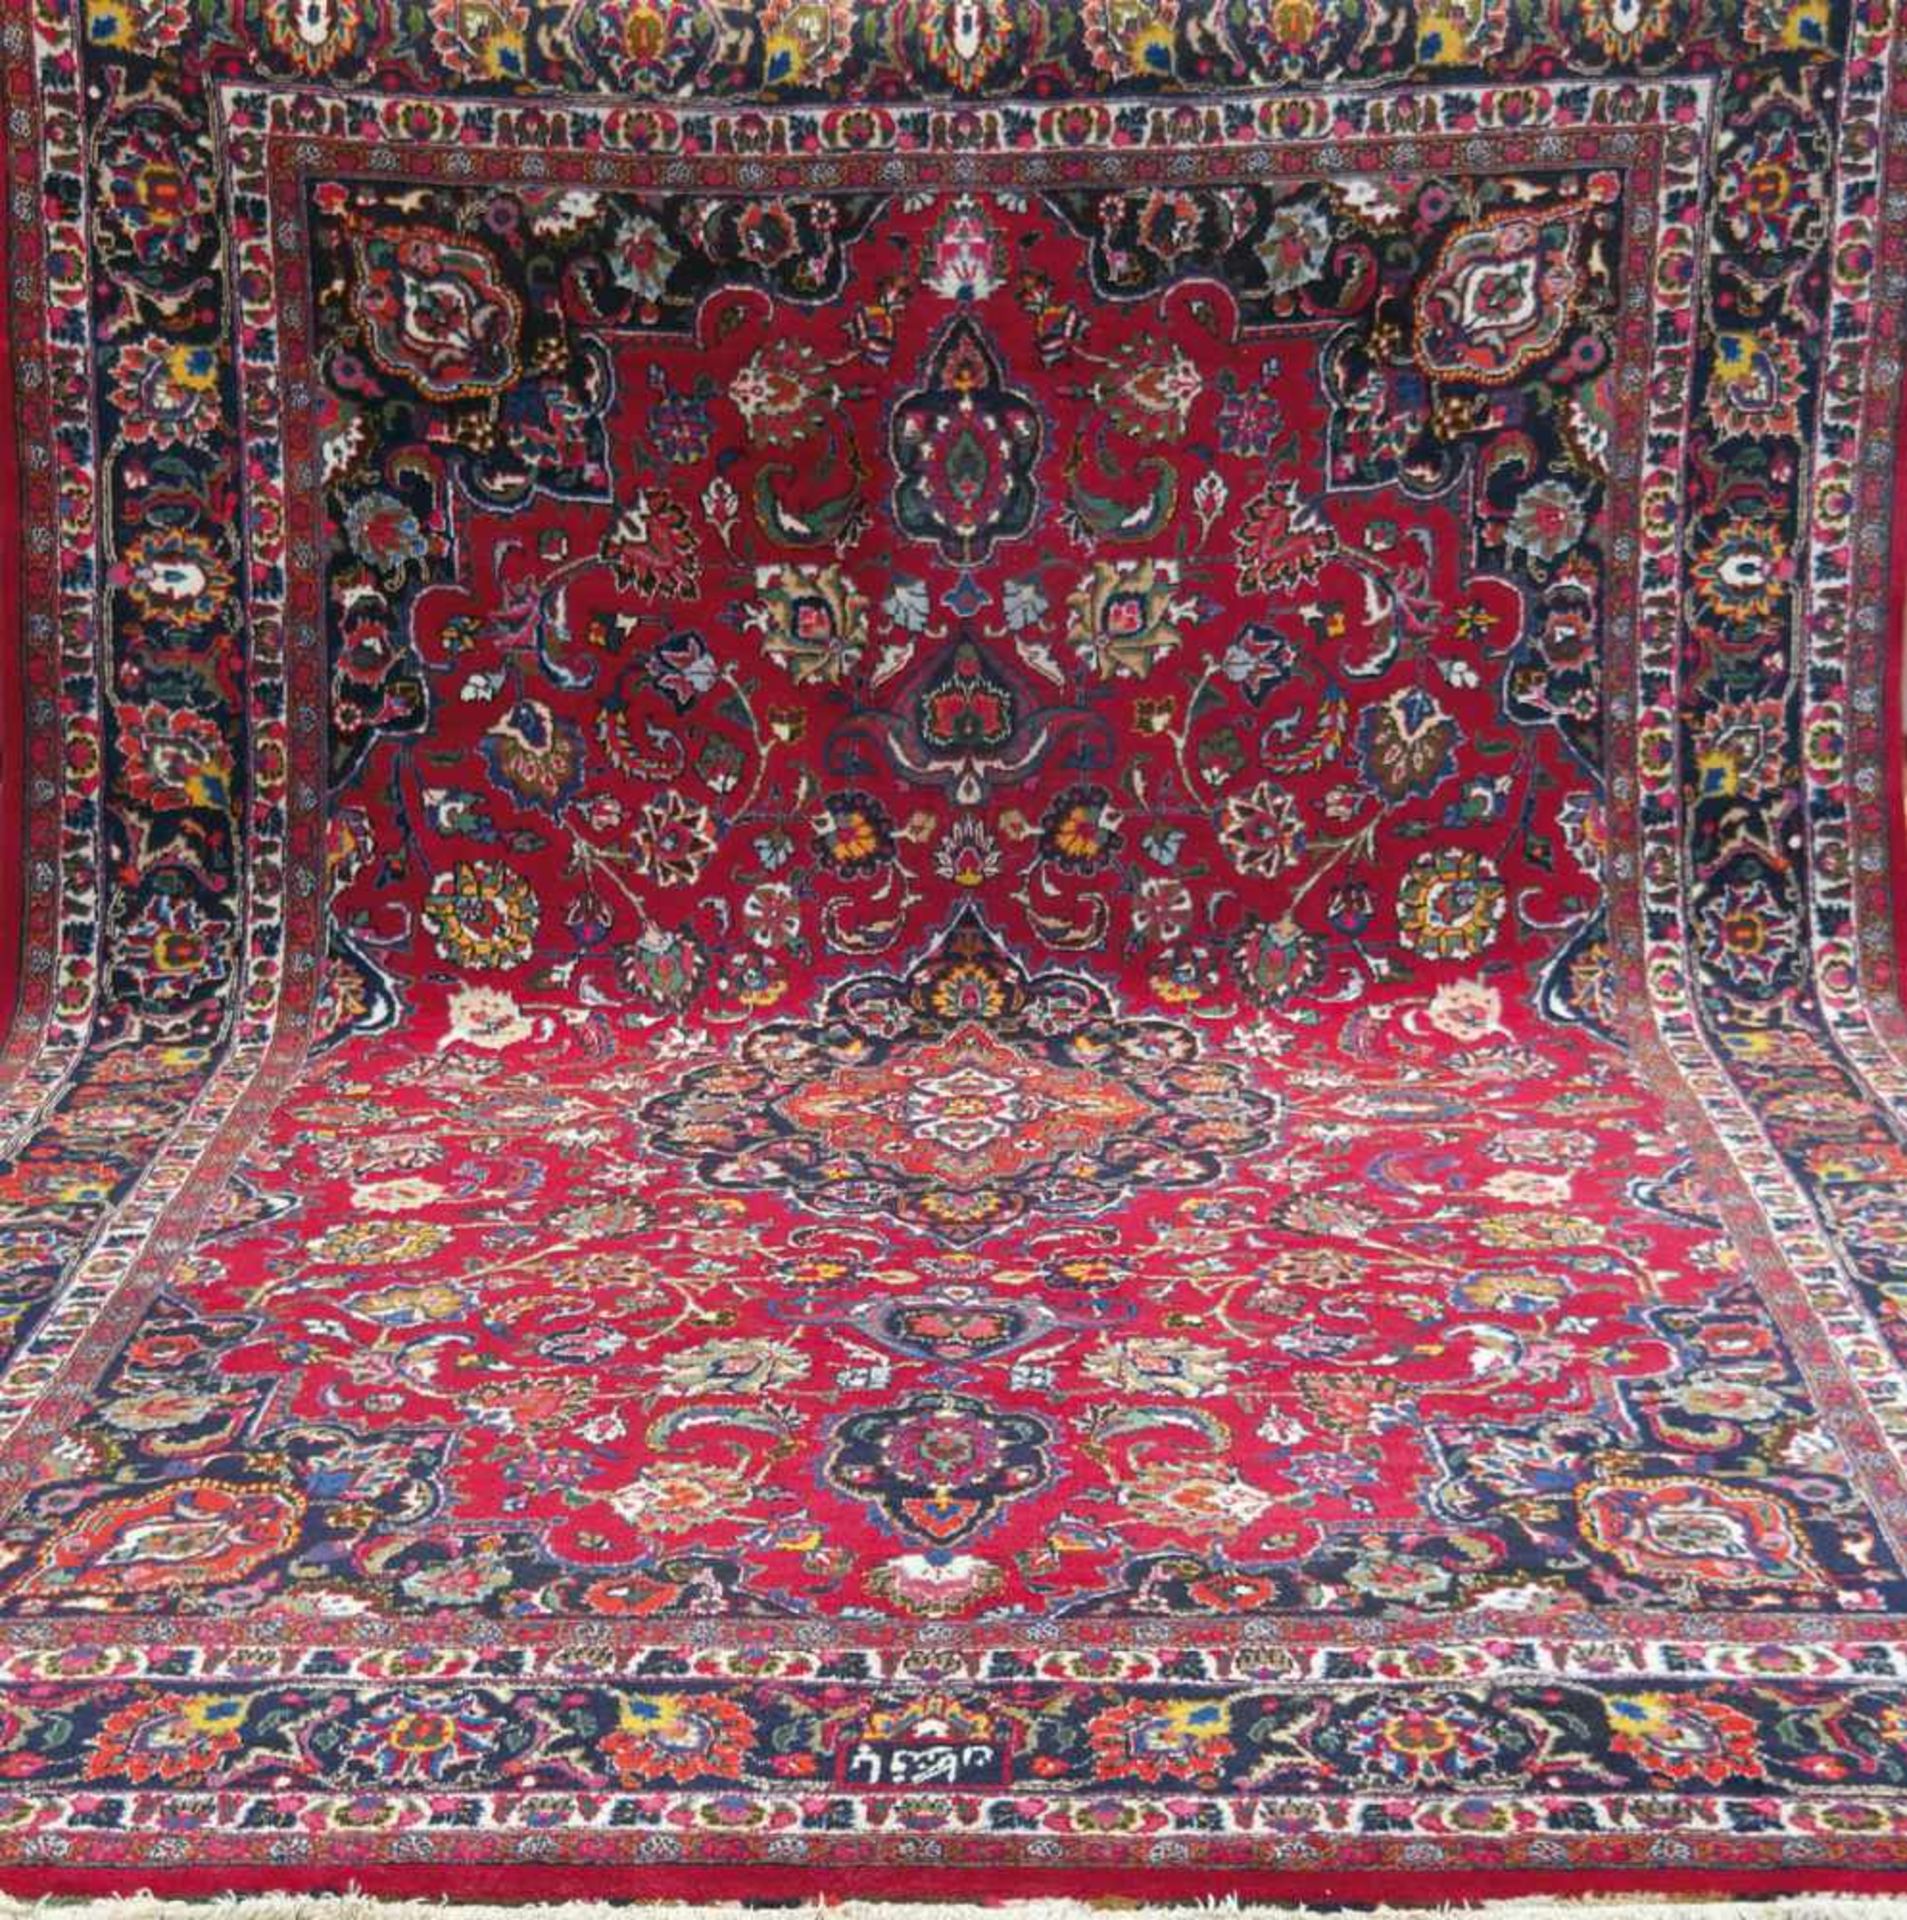 Mesched, rotgrundig mit zentralem Medaillon u. floralen Motiven, 1 kleine Stelle leichtbelaufen, mit